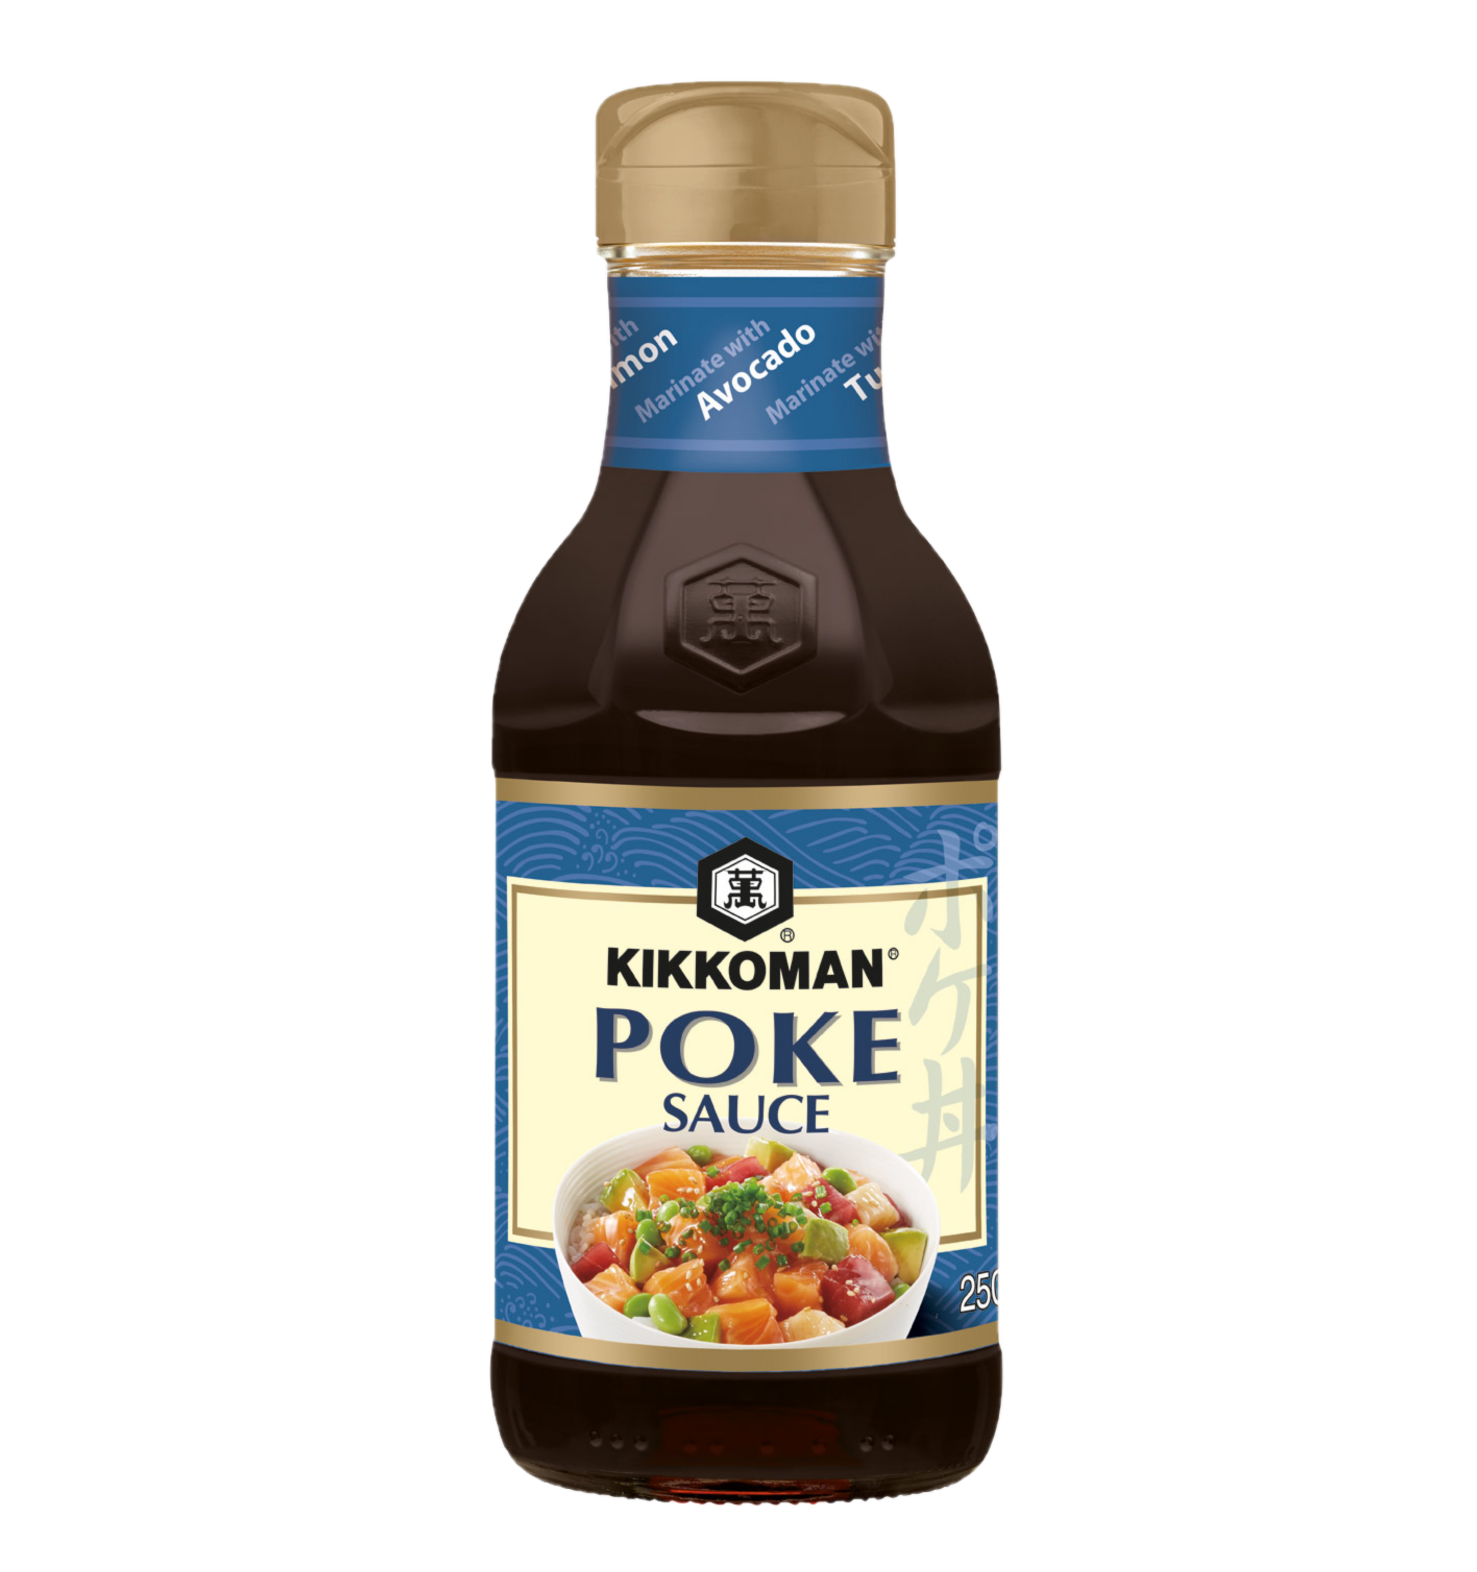 Kikkoman Poke sauce